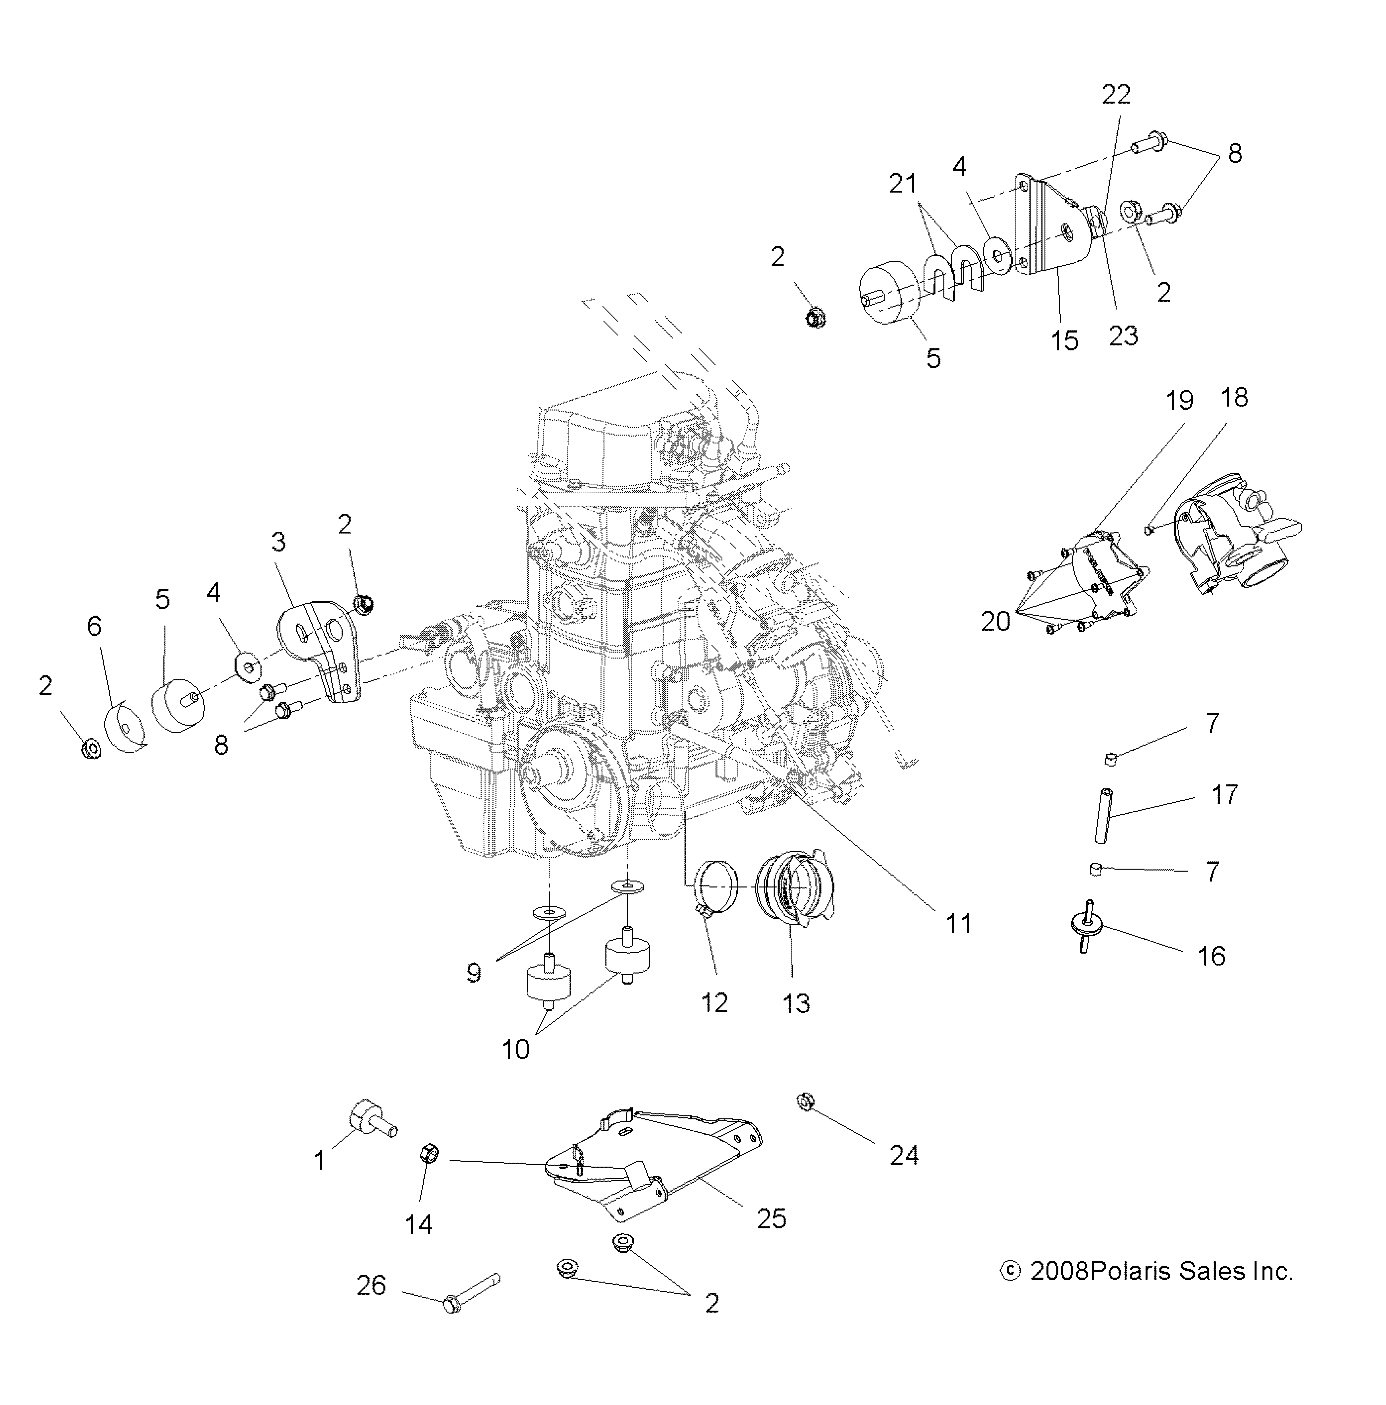 Foto diagrama Polaris que contem a peça 1016163-329